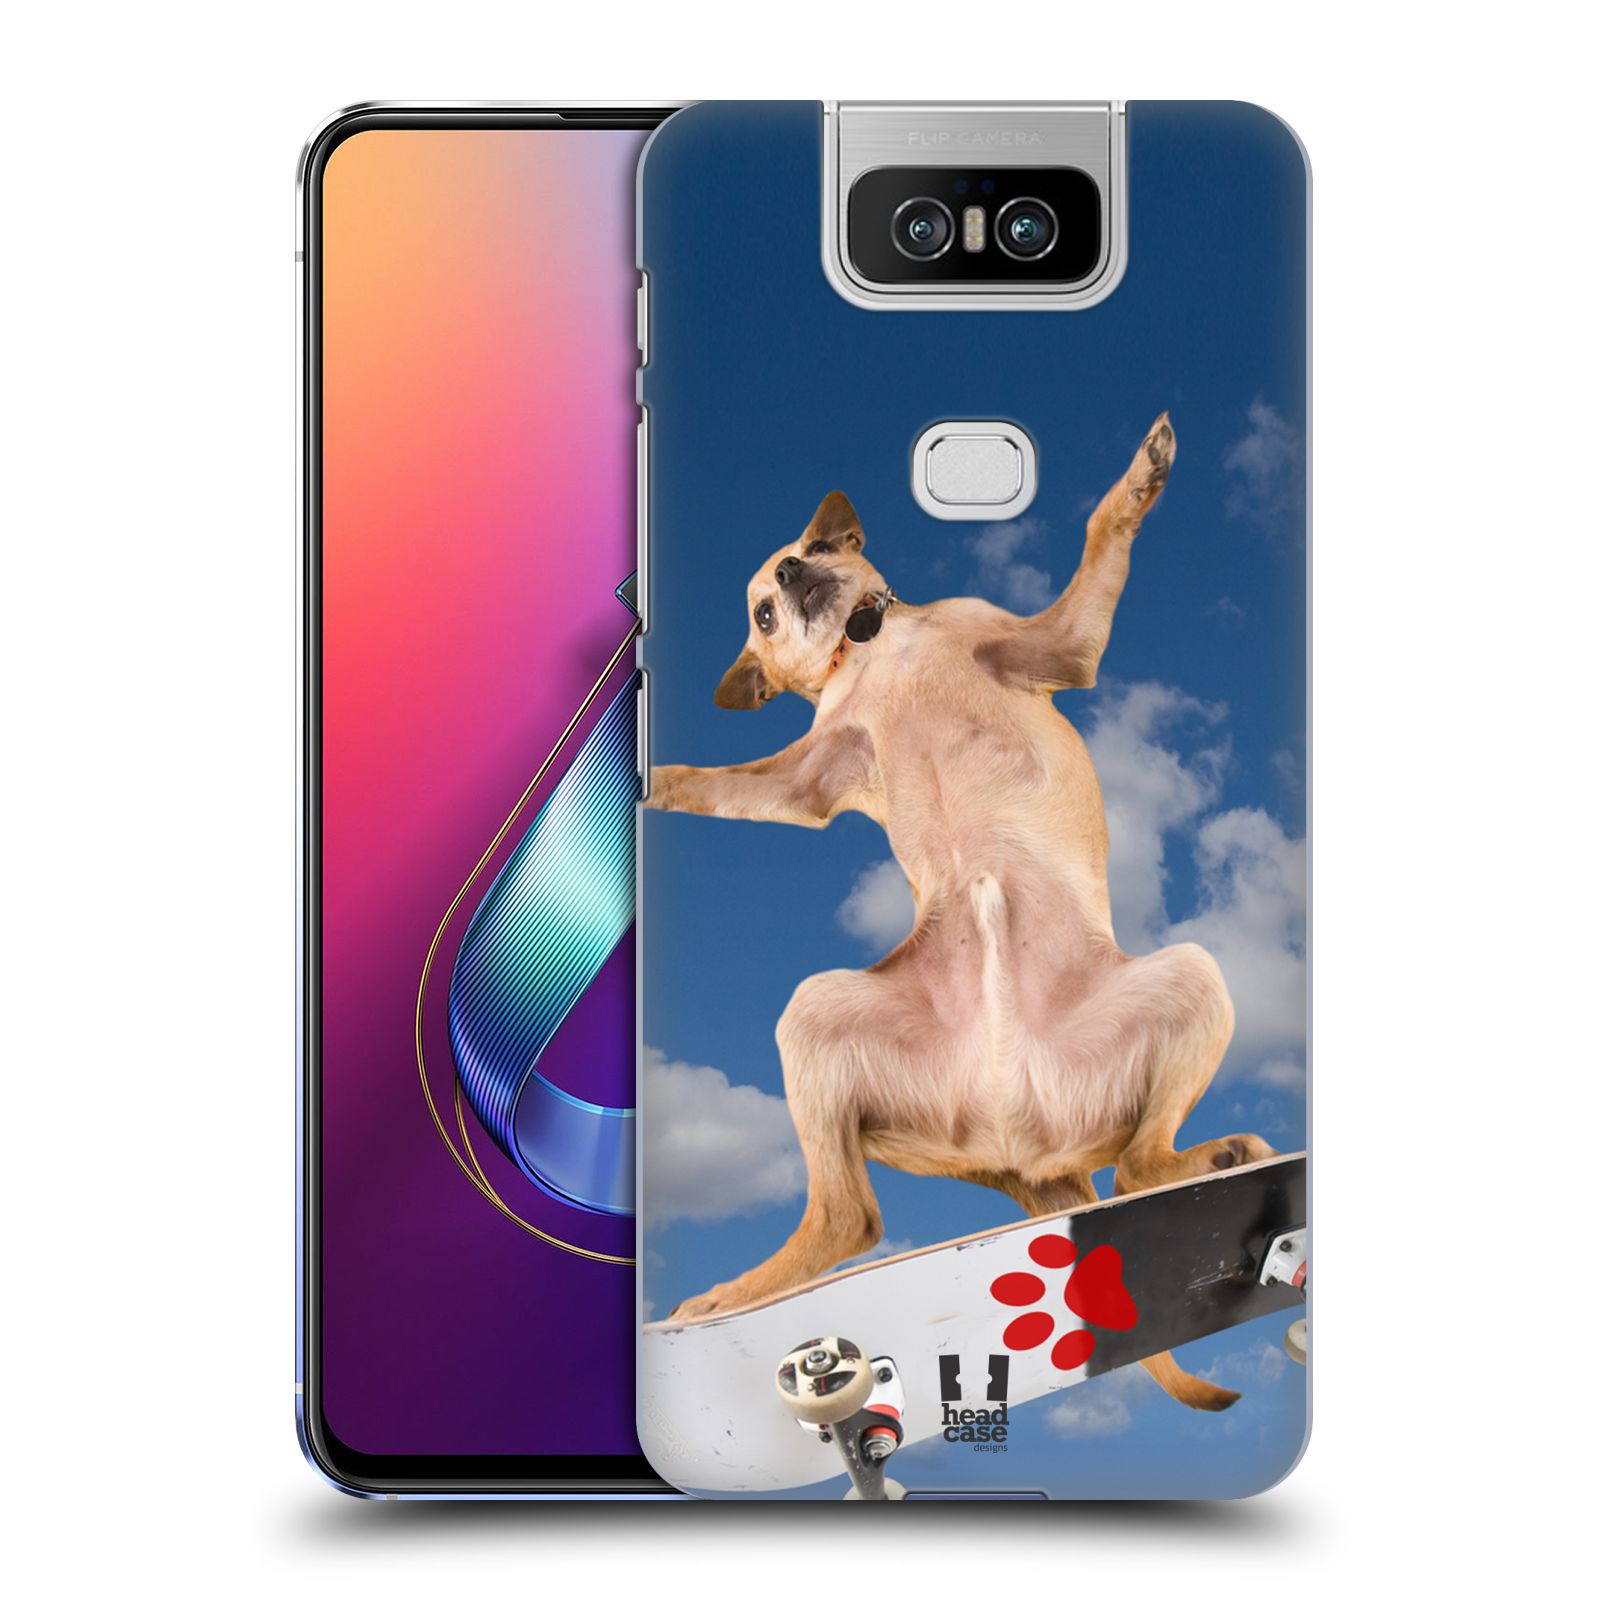 Pouzdro na mobil Asus Zenfone 6 ZS630KL - HEAD CASE - vzor Legrační zvířátka pejsek skateboard